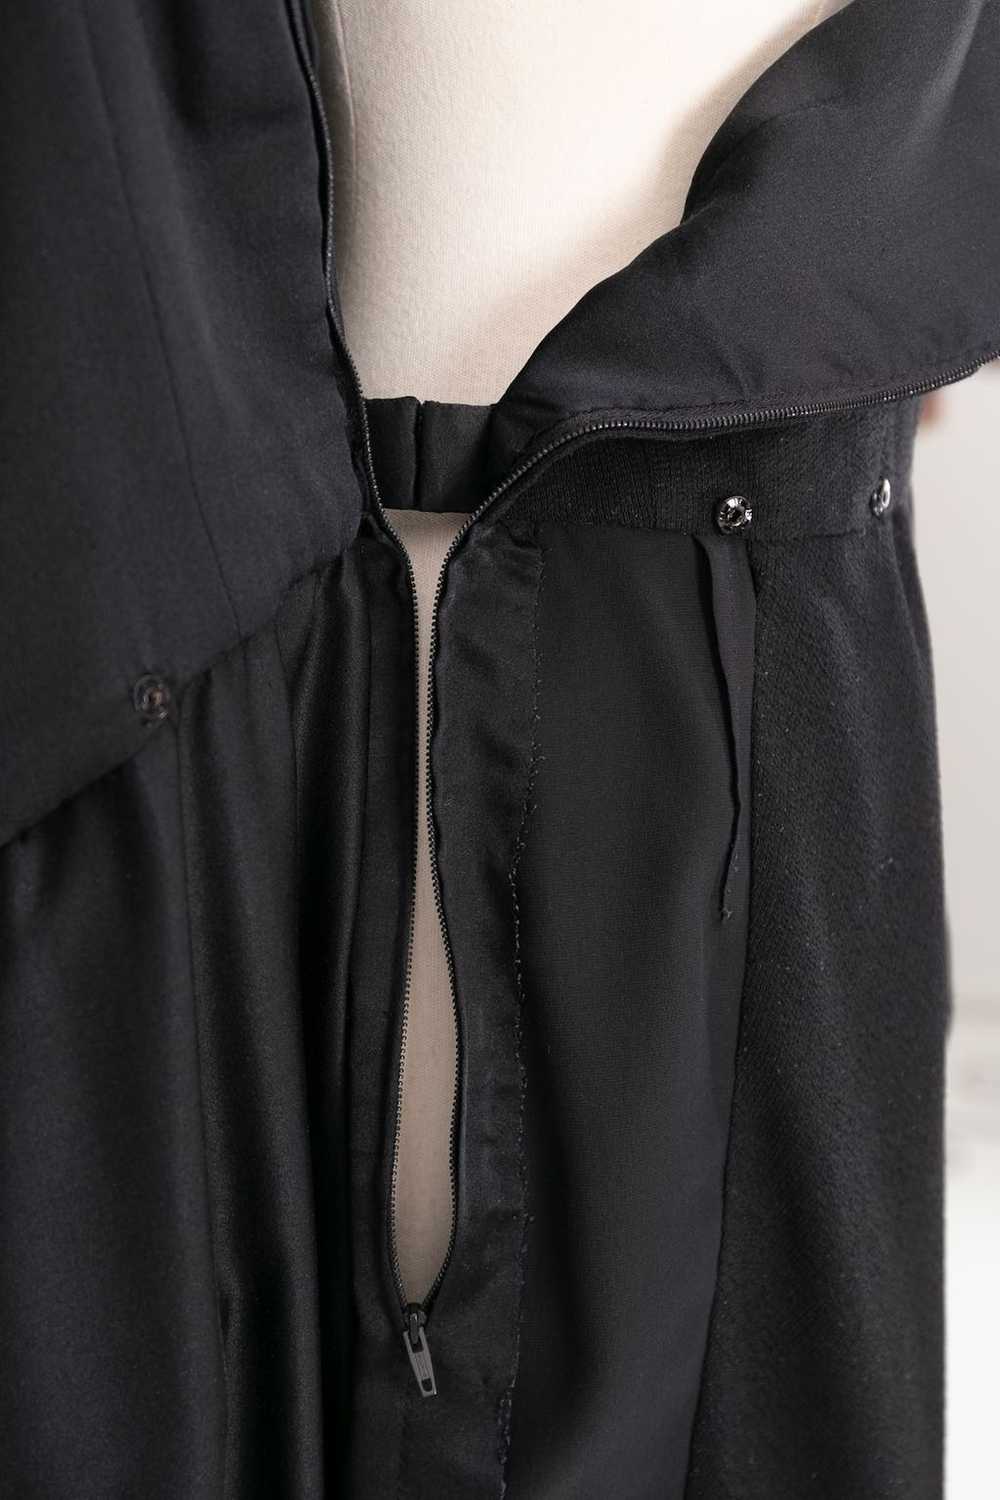 Yves saint Laurent Haute Couture black dress - image 7